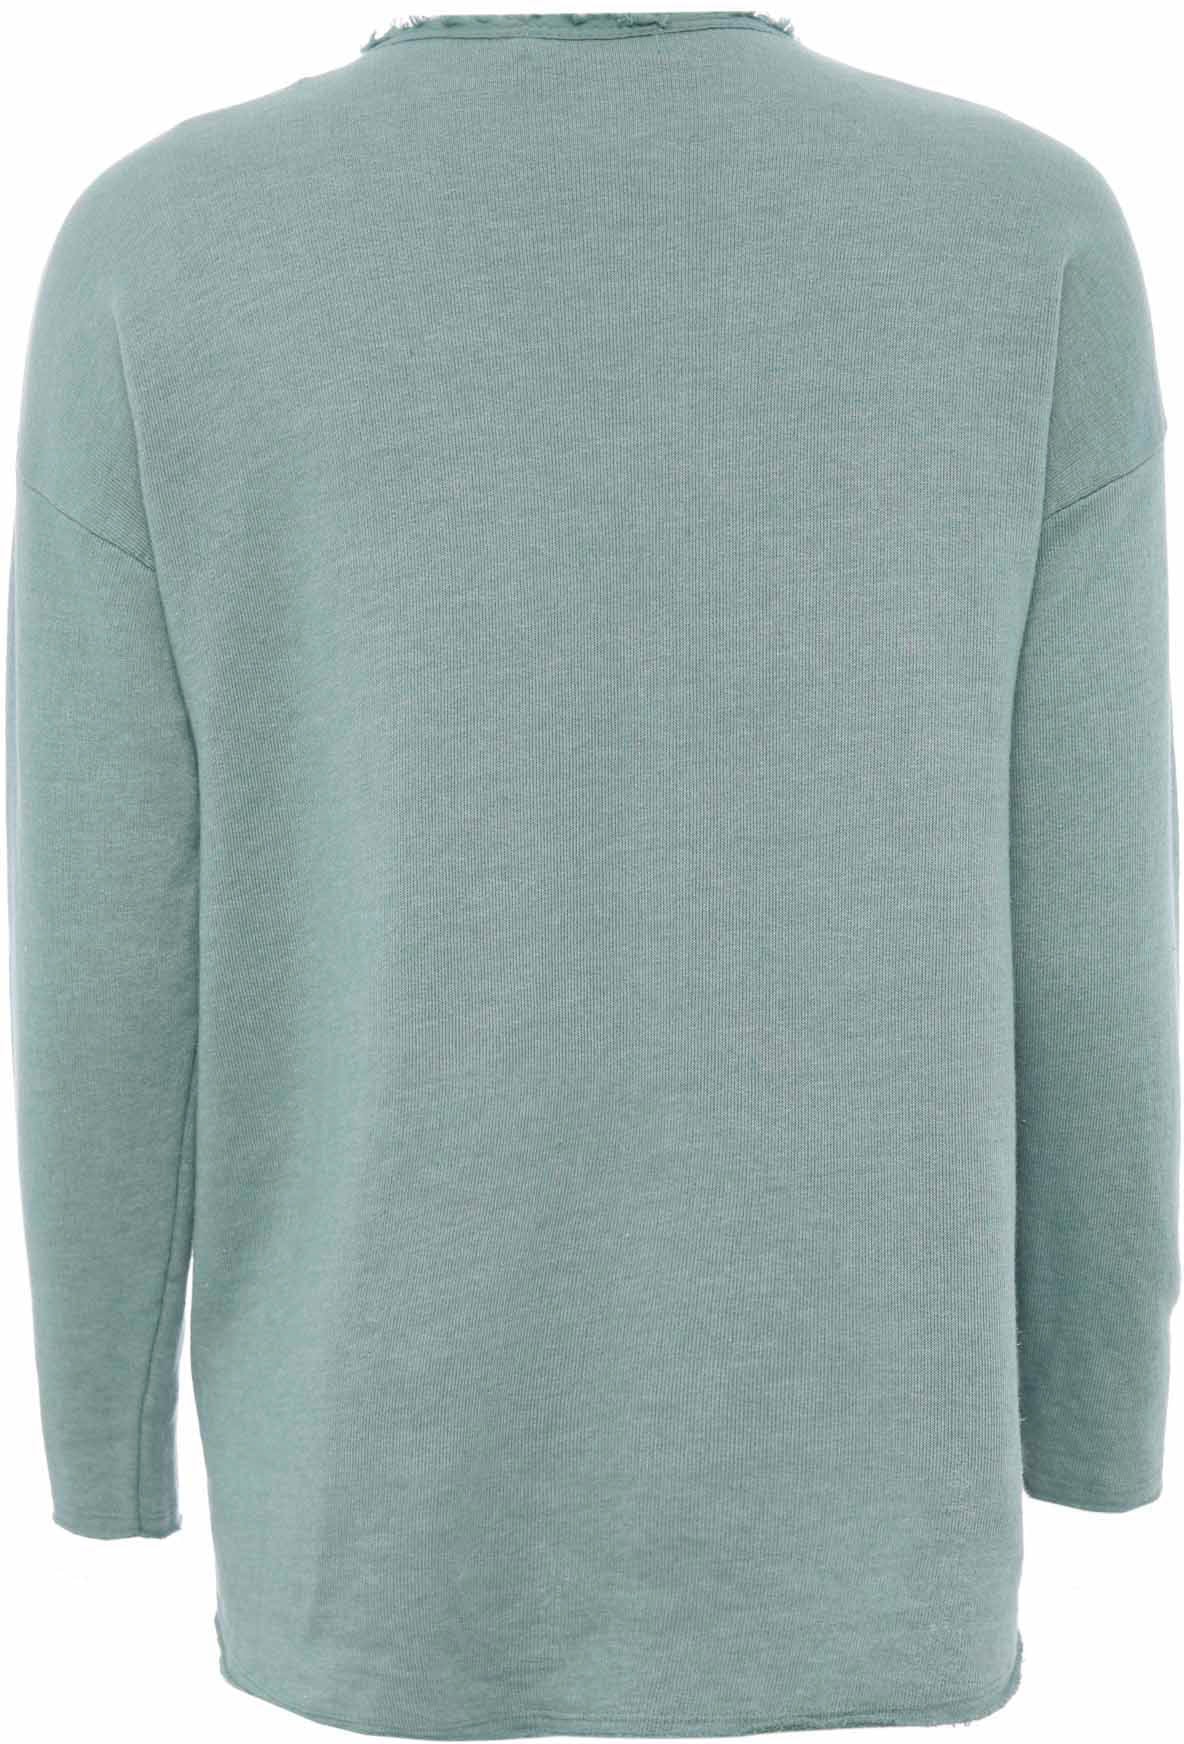 Zwillingsherz Sweatshirt, V-Ausschnitt im Used-Look leicht ausgefranst